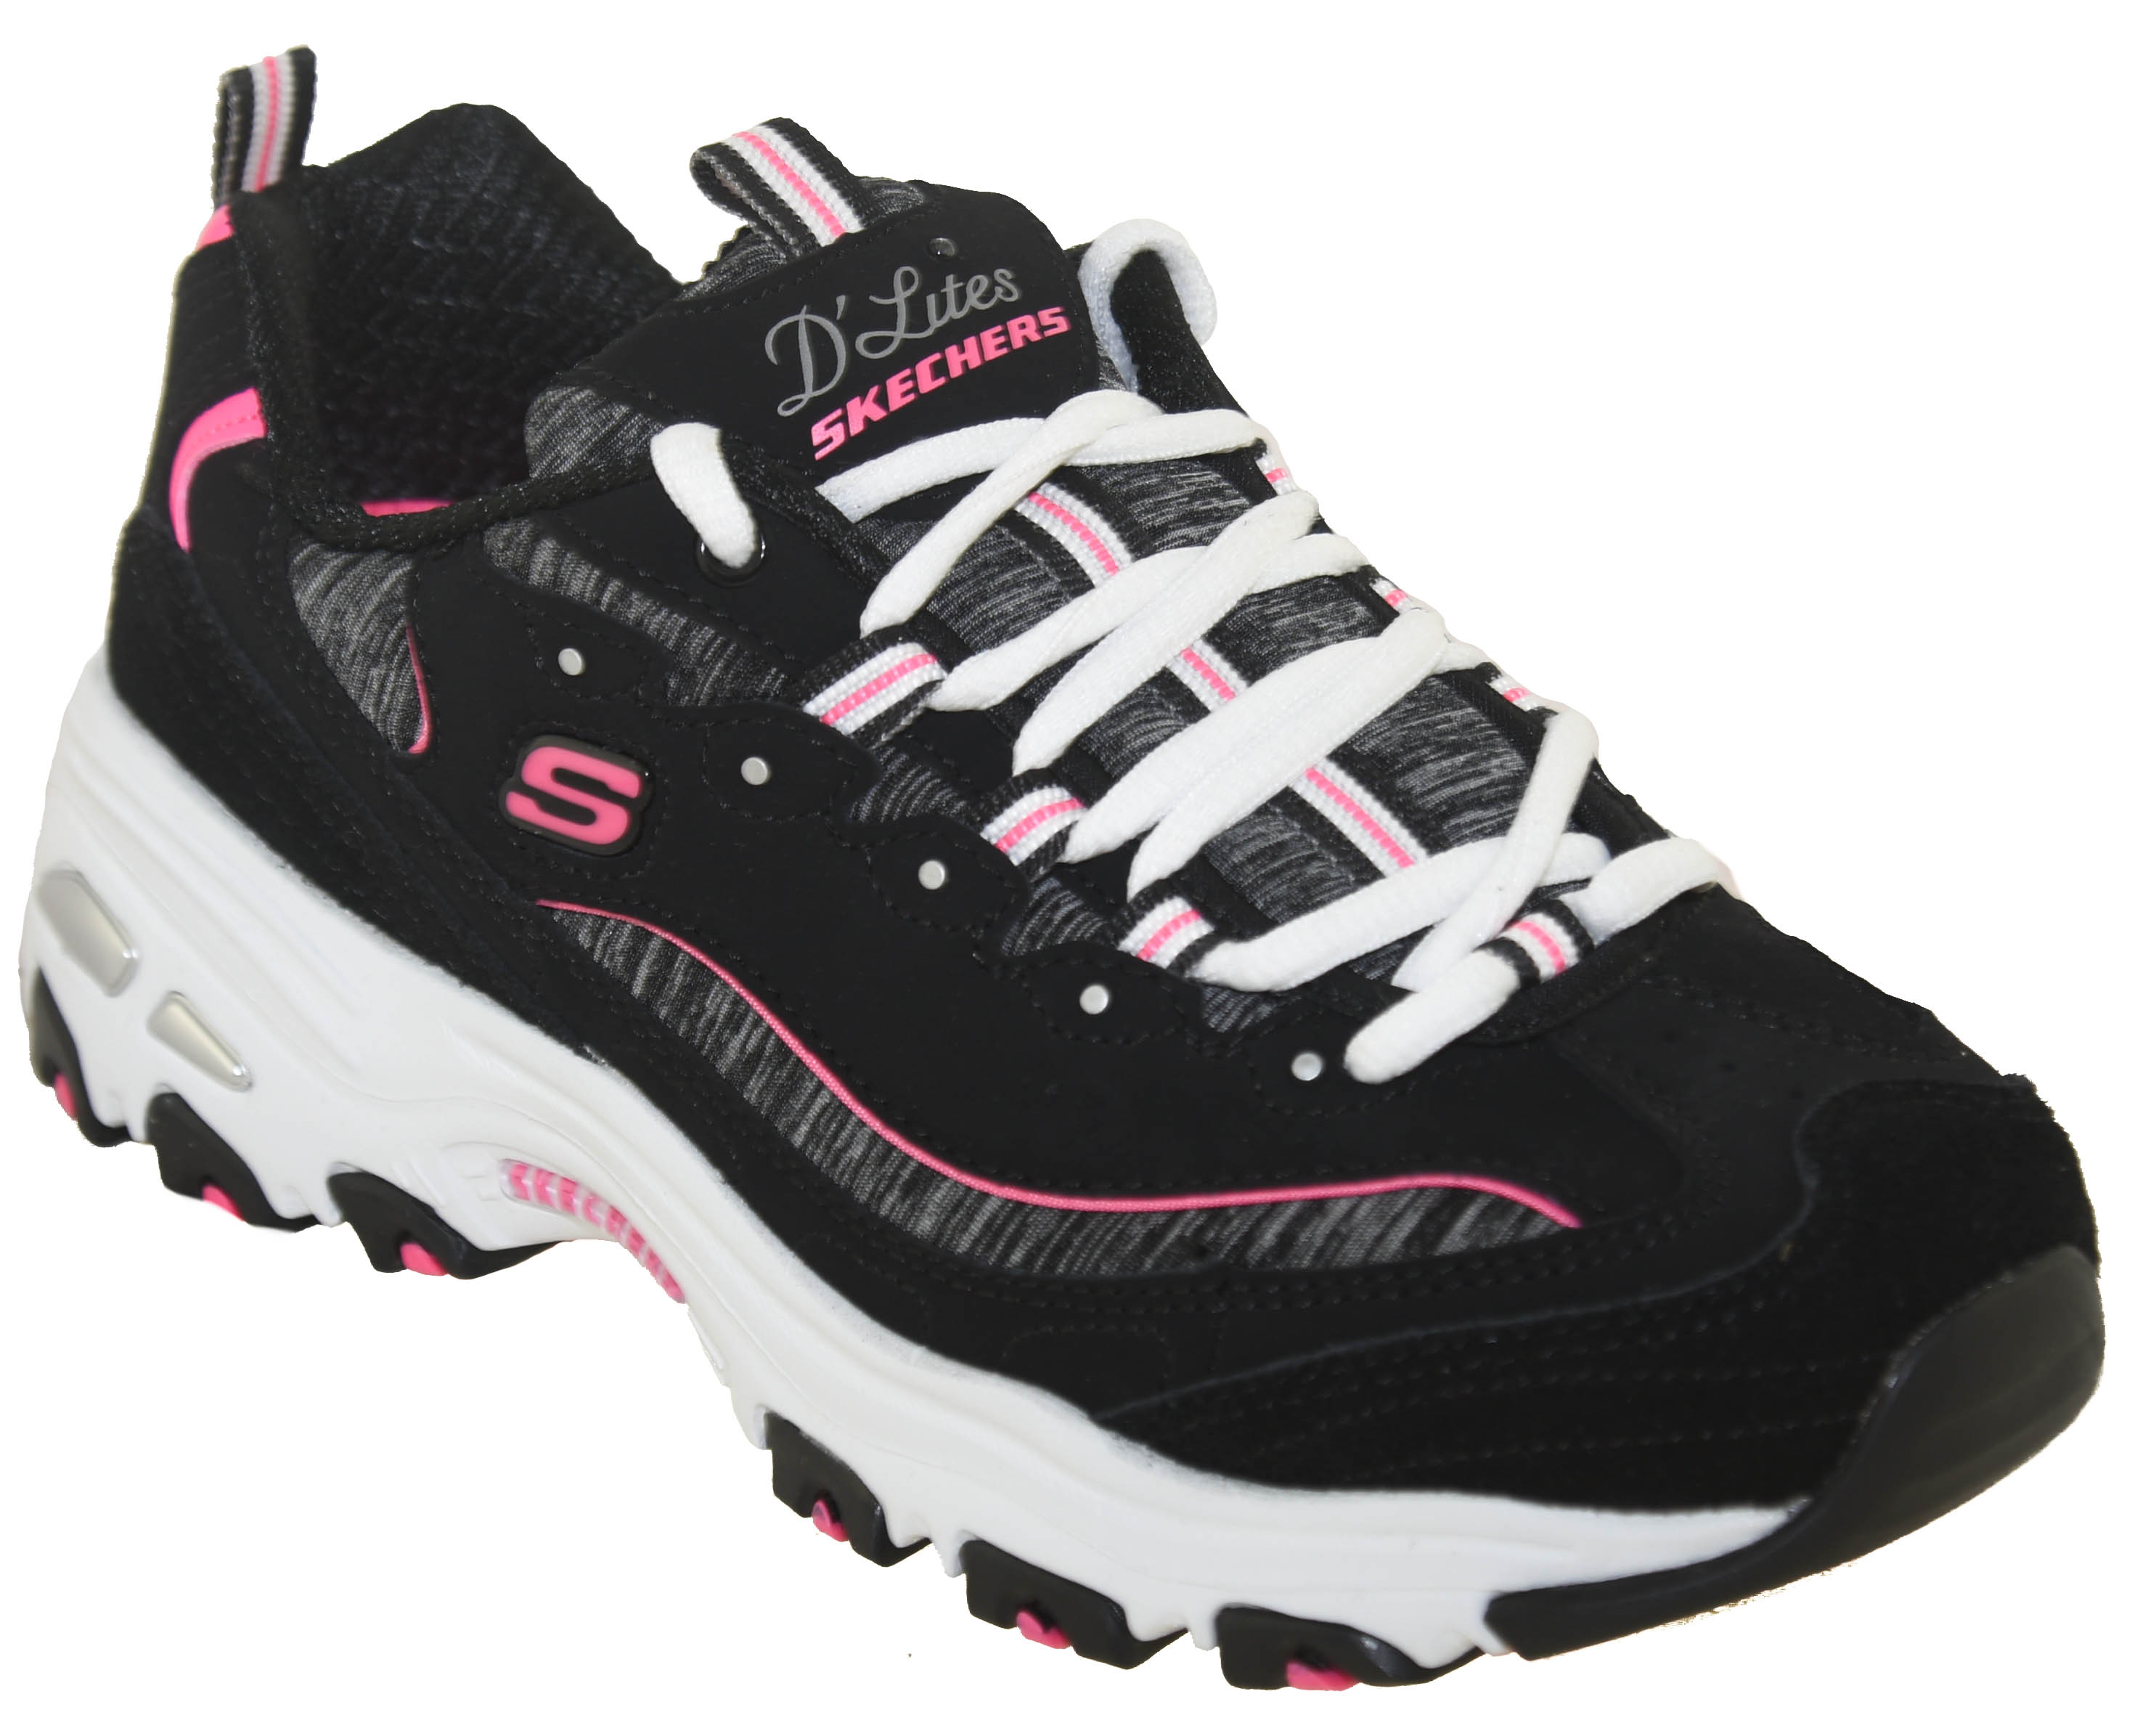 Skechers Women's D'Lites Me Time Athletic Sneaker 11936 BKHP | eBay